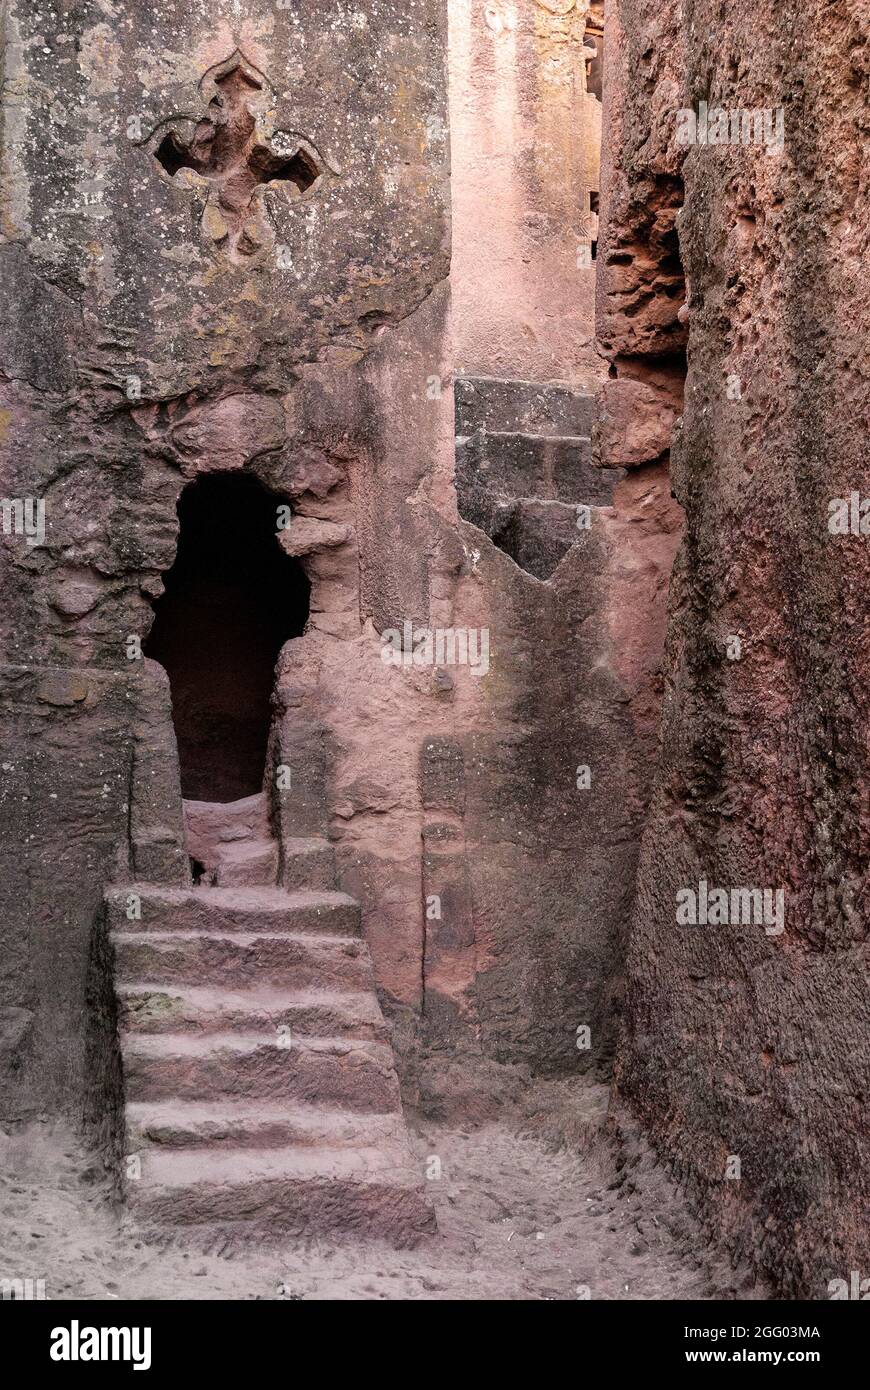 lalibela les anciennes églises monolithiques rock-hewn sont un site classé au patrimoine de l'UNESCO dans le nord de l'éthiopie Banque D'Images